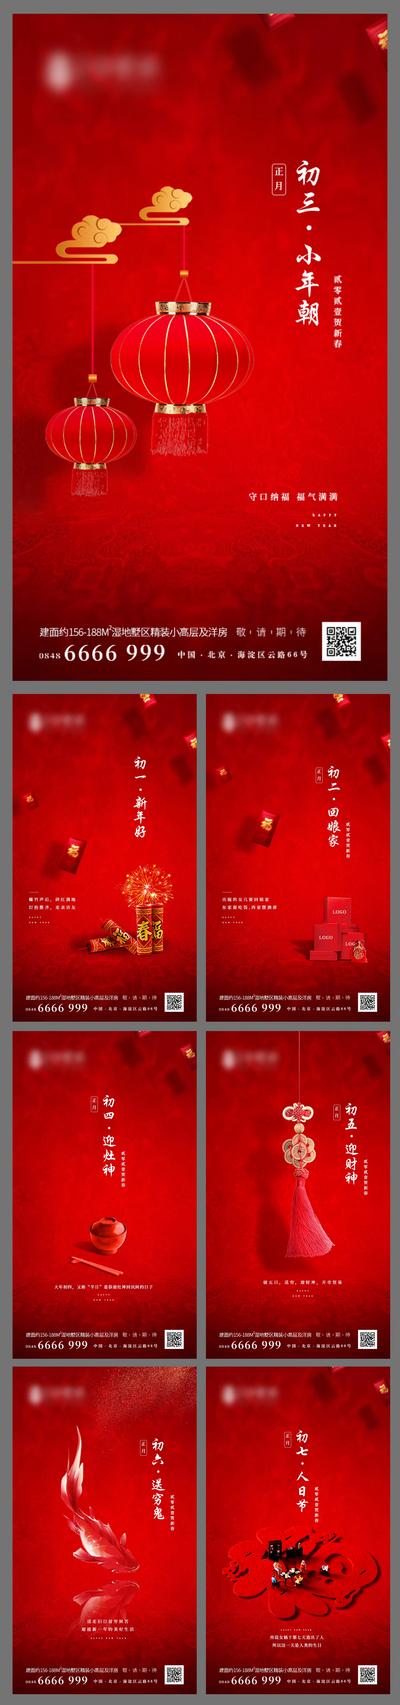 南门网 海报 房地产 春节 新年 中国传统节日 系列 初一 灯笼 年俗 红包